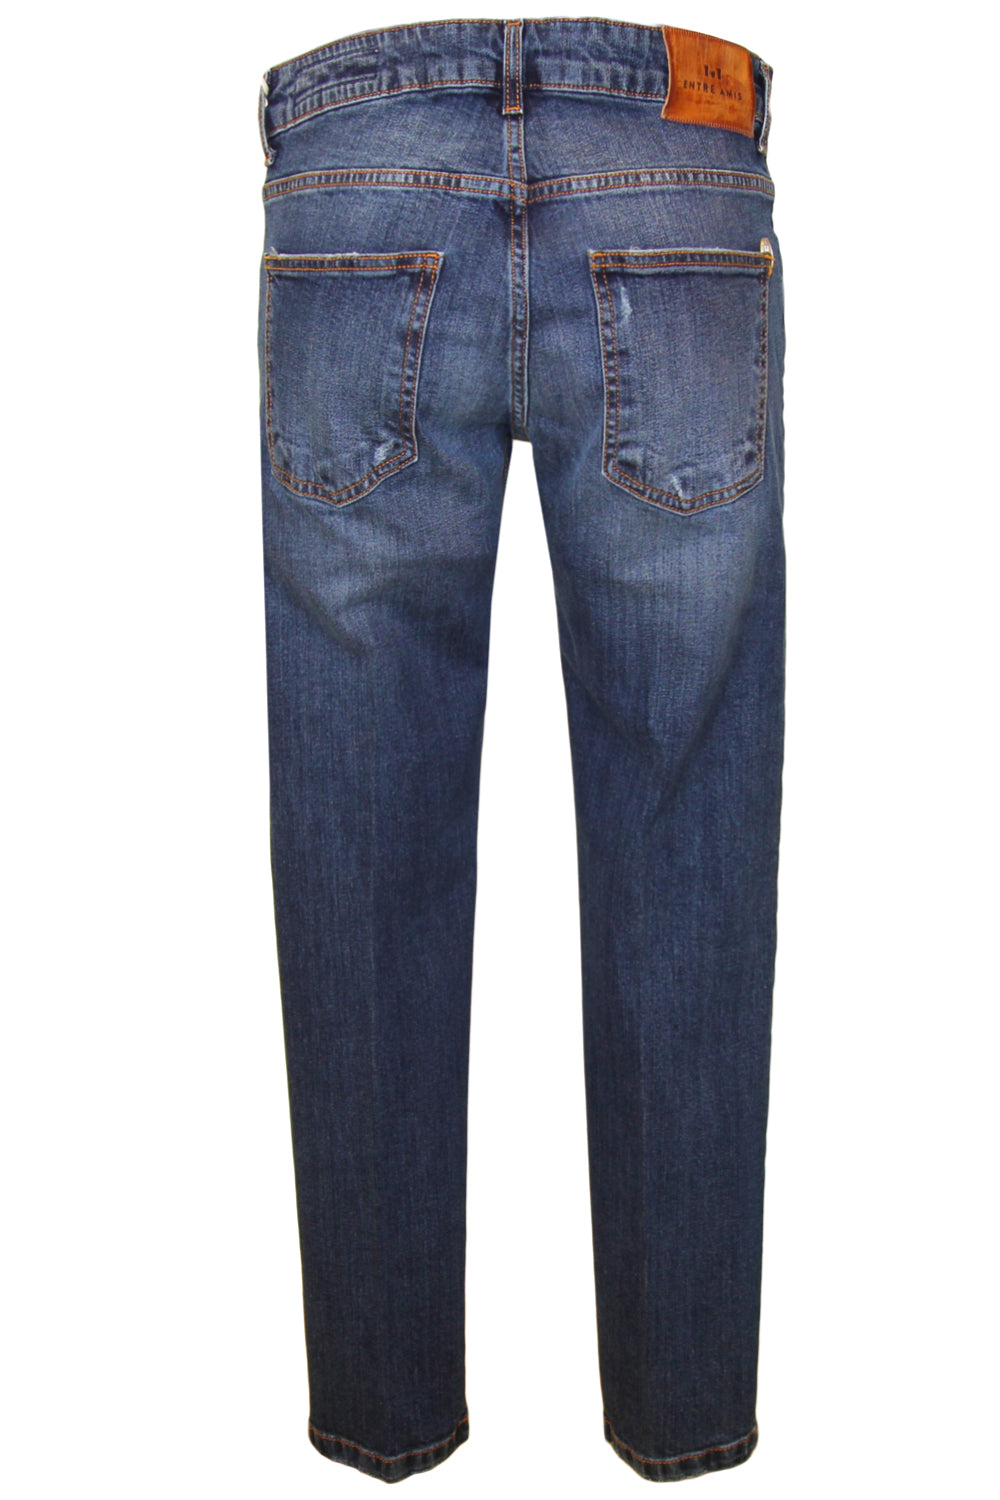 ENTRE AMIS Jeans modello Capri